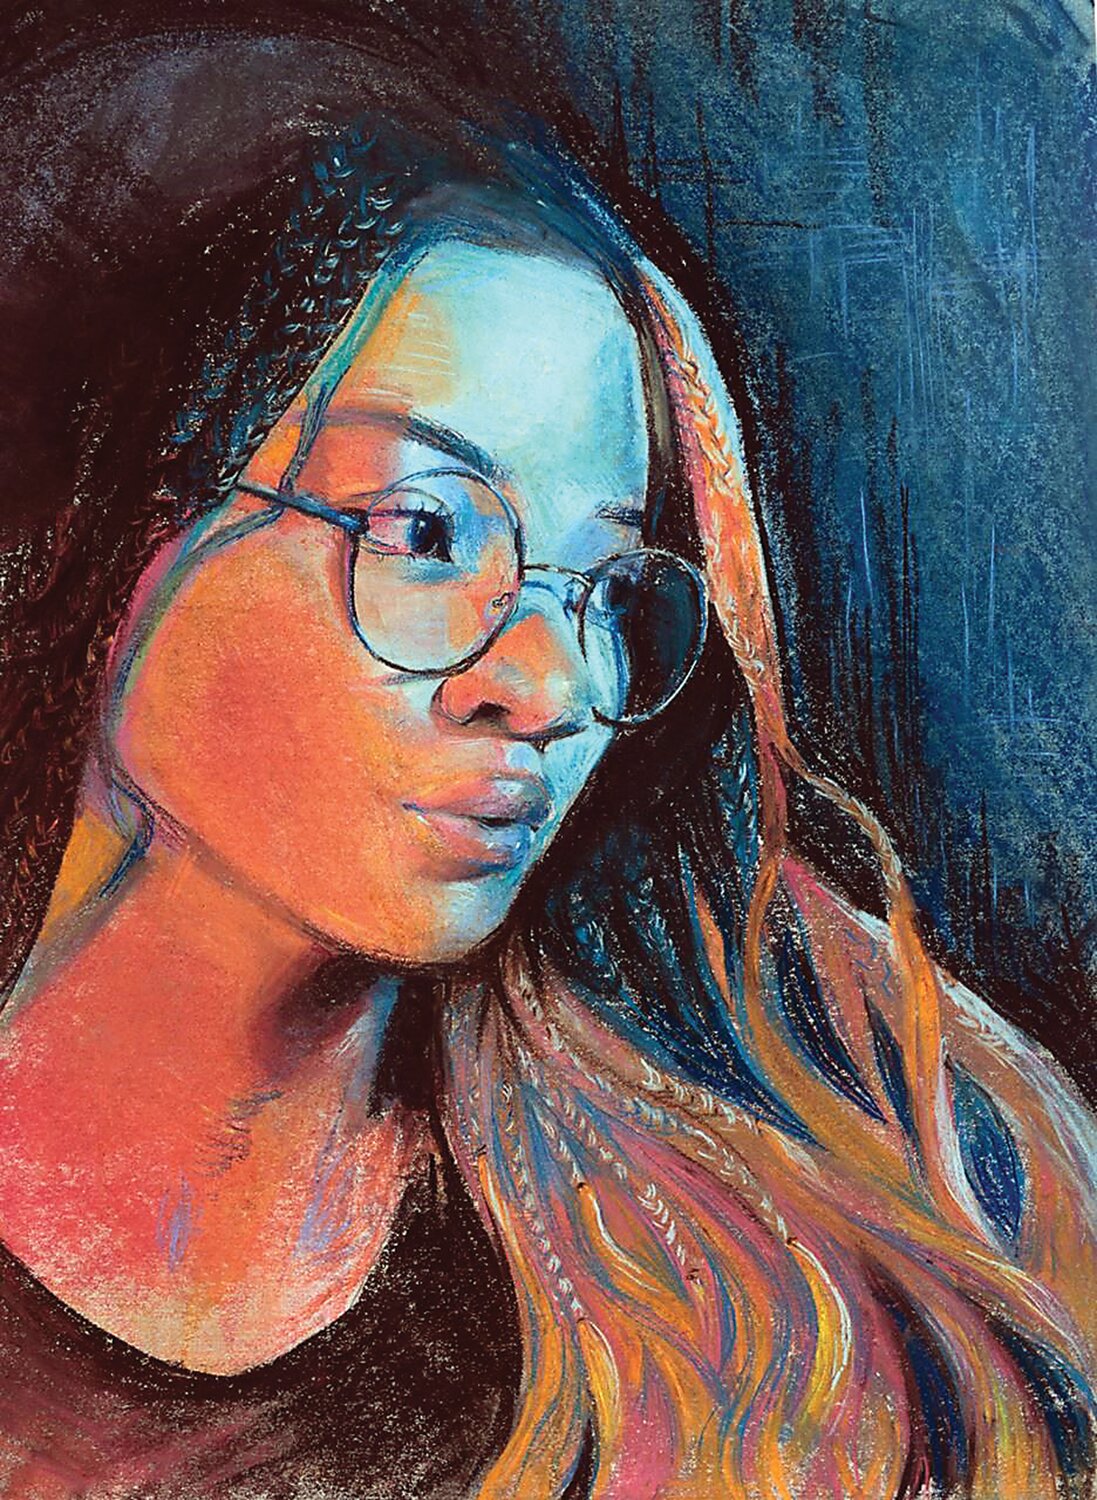 Best in Show award winner “Self Portrait Study” by Shaela Joseph of George School is a chalk pastel on paper.